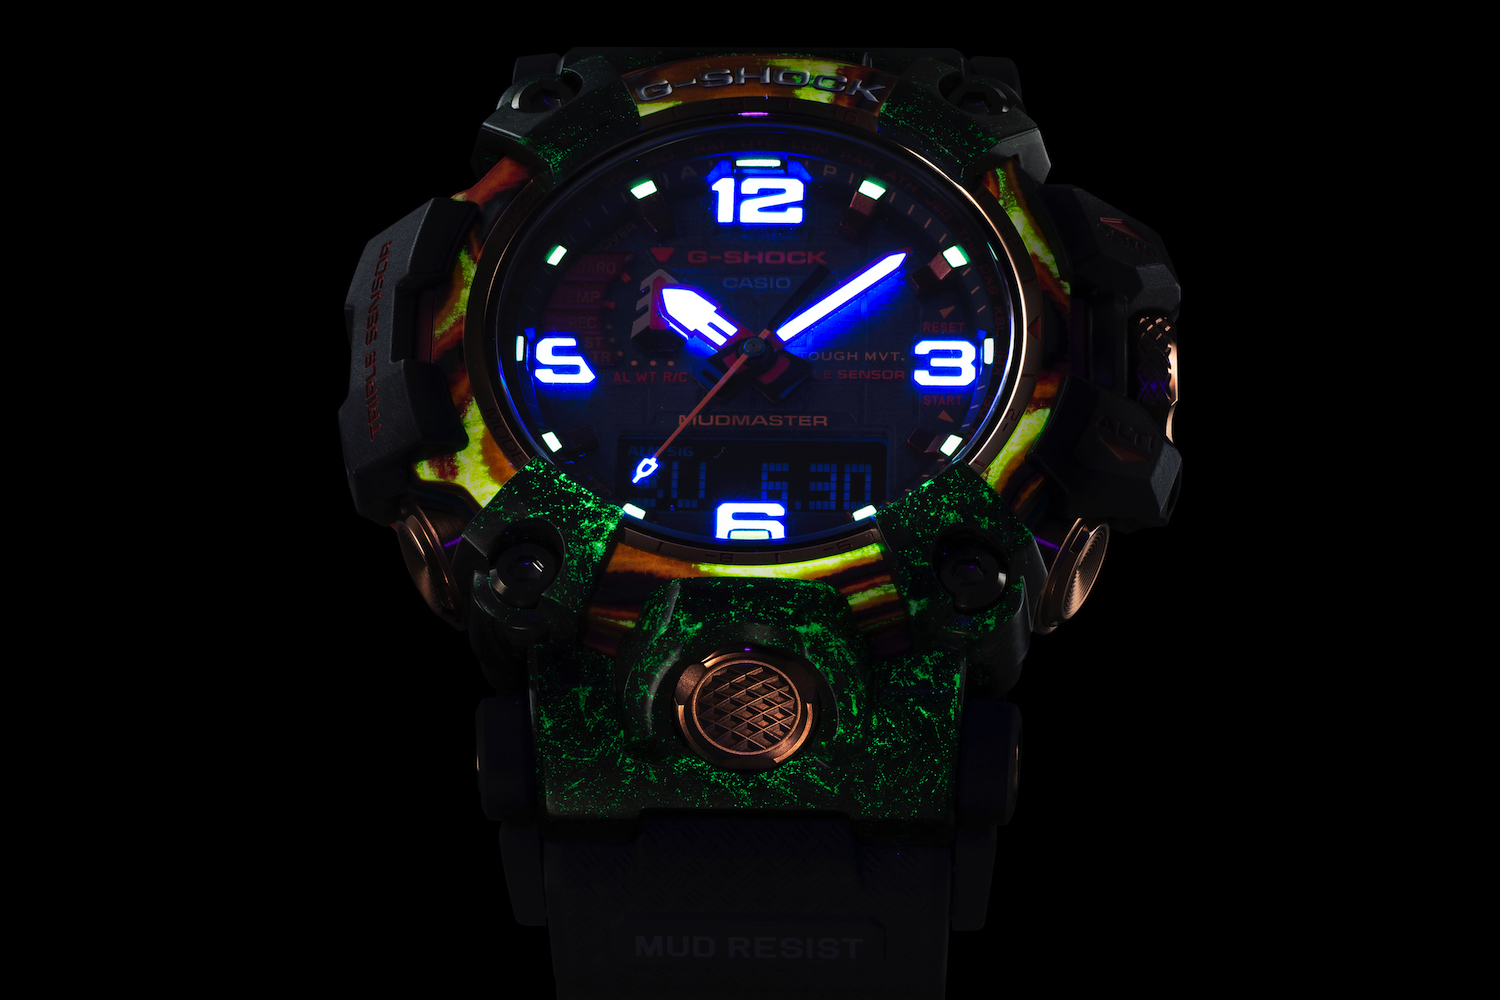 G-Shock GWG-2040FR brilhando no escuro.